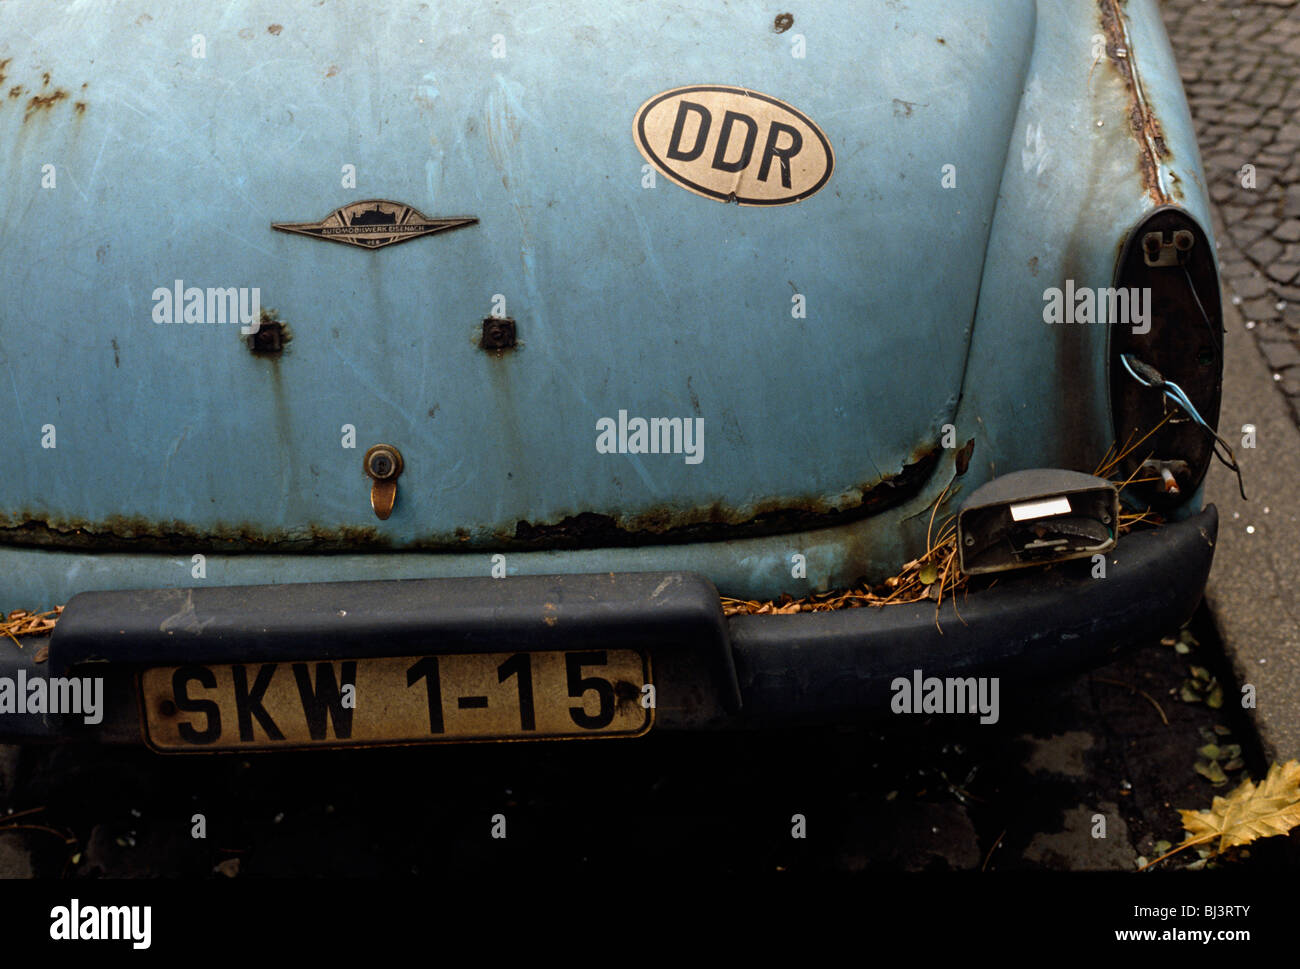 Detail von einem rostigen Auto Wartburg 312 an der Bordsteinkante in einen östlichen Berliner Bezirk. Ein Aufkleber mit den Buchstaben DDR. Stockfoto